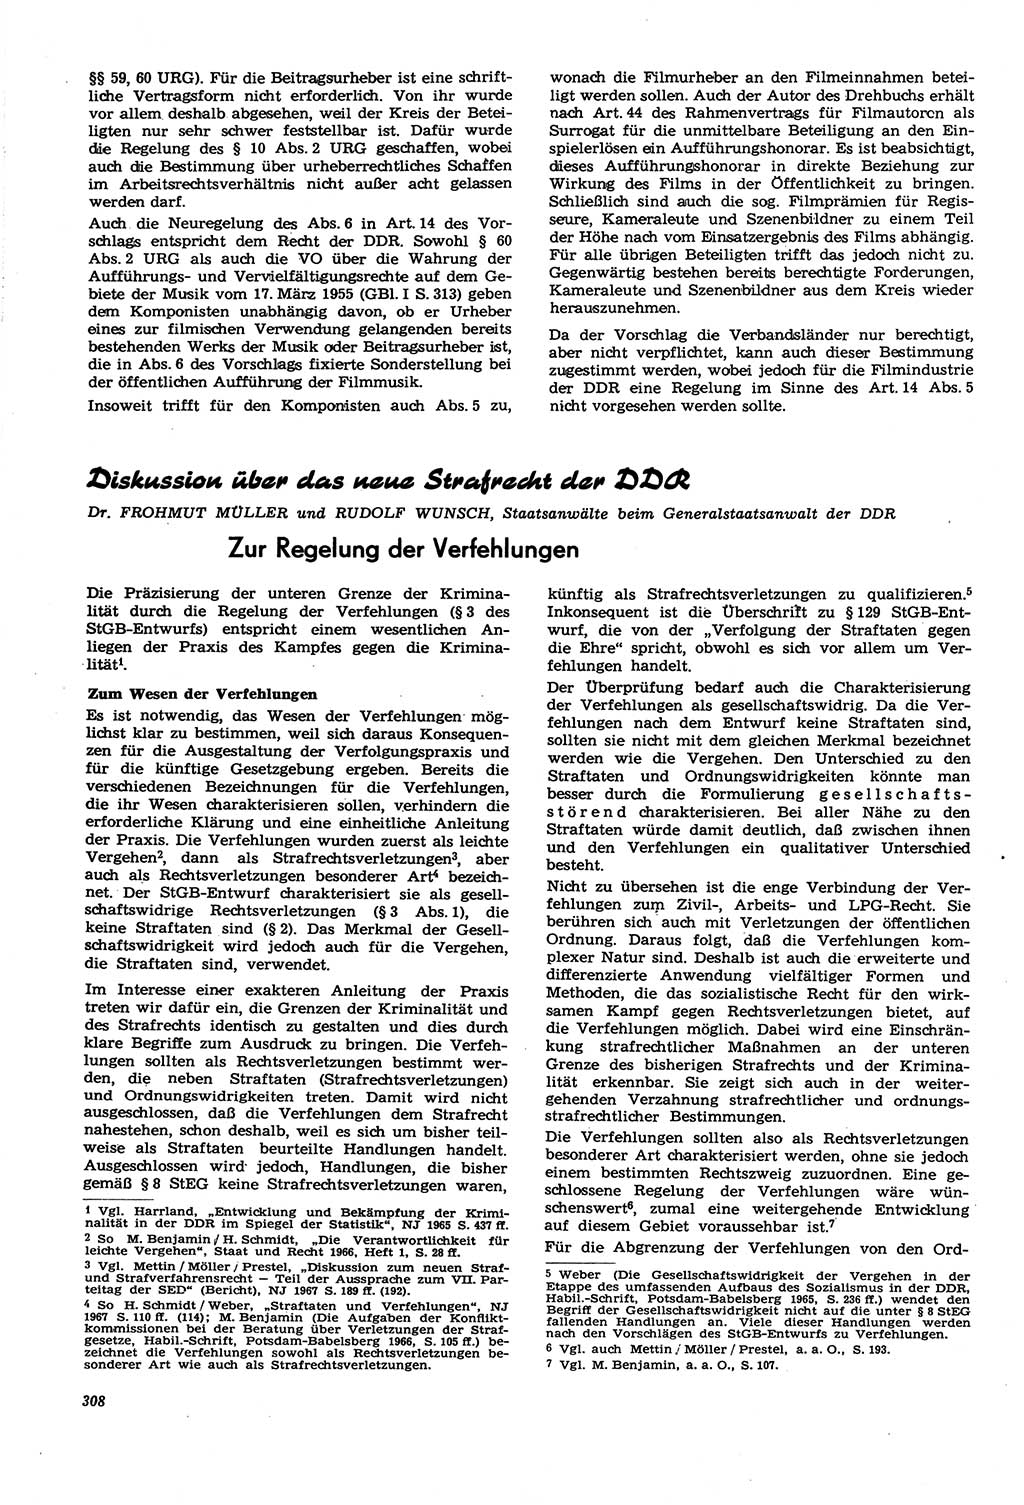 Neue Justiz (NJ), Zeitschrift für Recht und Rechtswissenschaft [Deutsche Demokratische Republik (DDR)], 21. Jahrgang 1967, Seite 308 (NJ DDR 1967, S. 308)